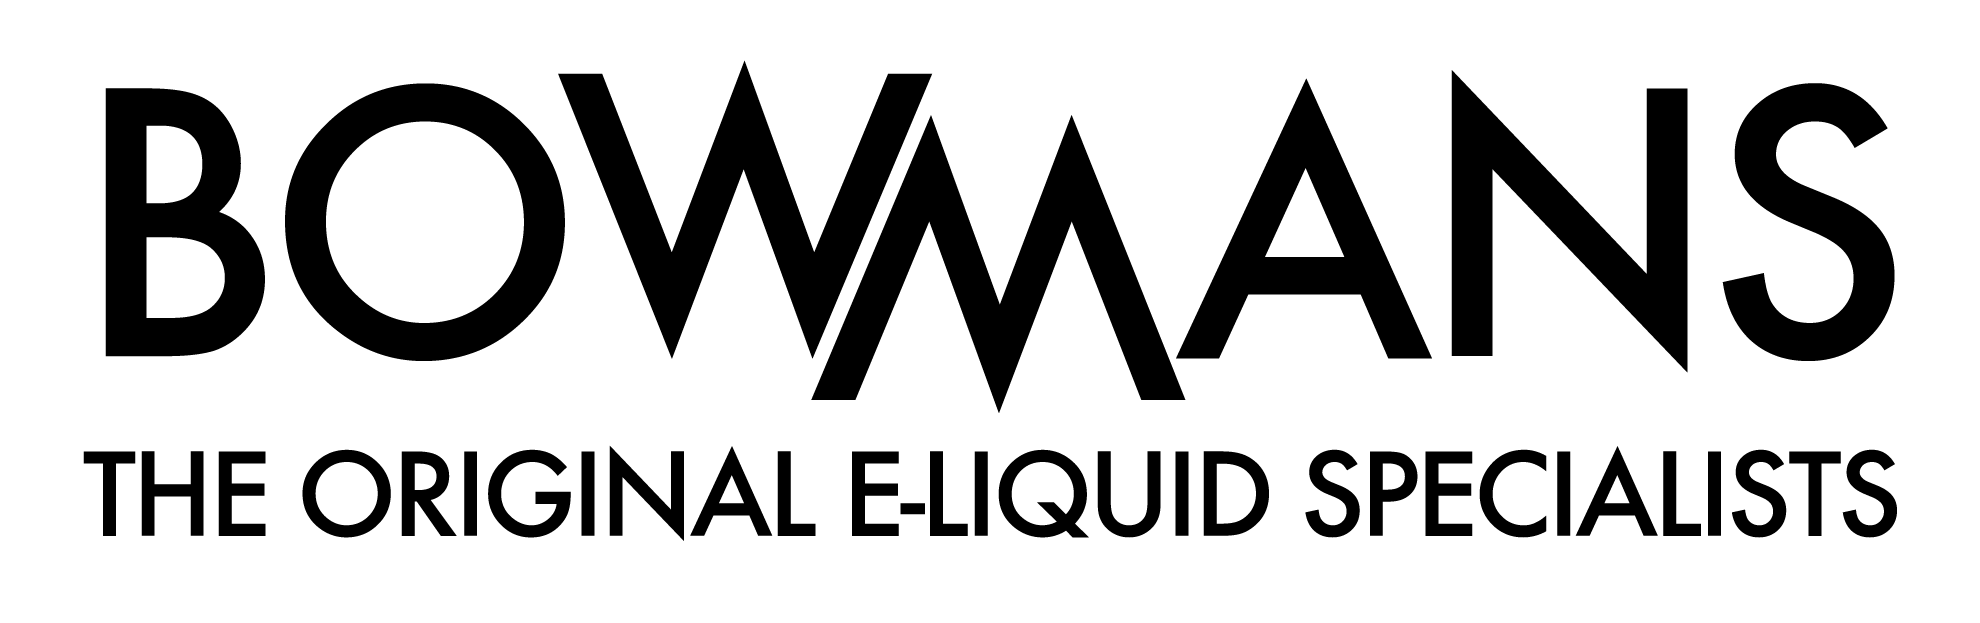 bowman-logo